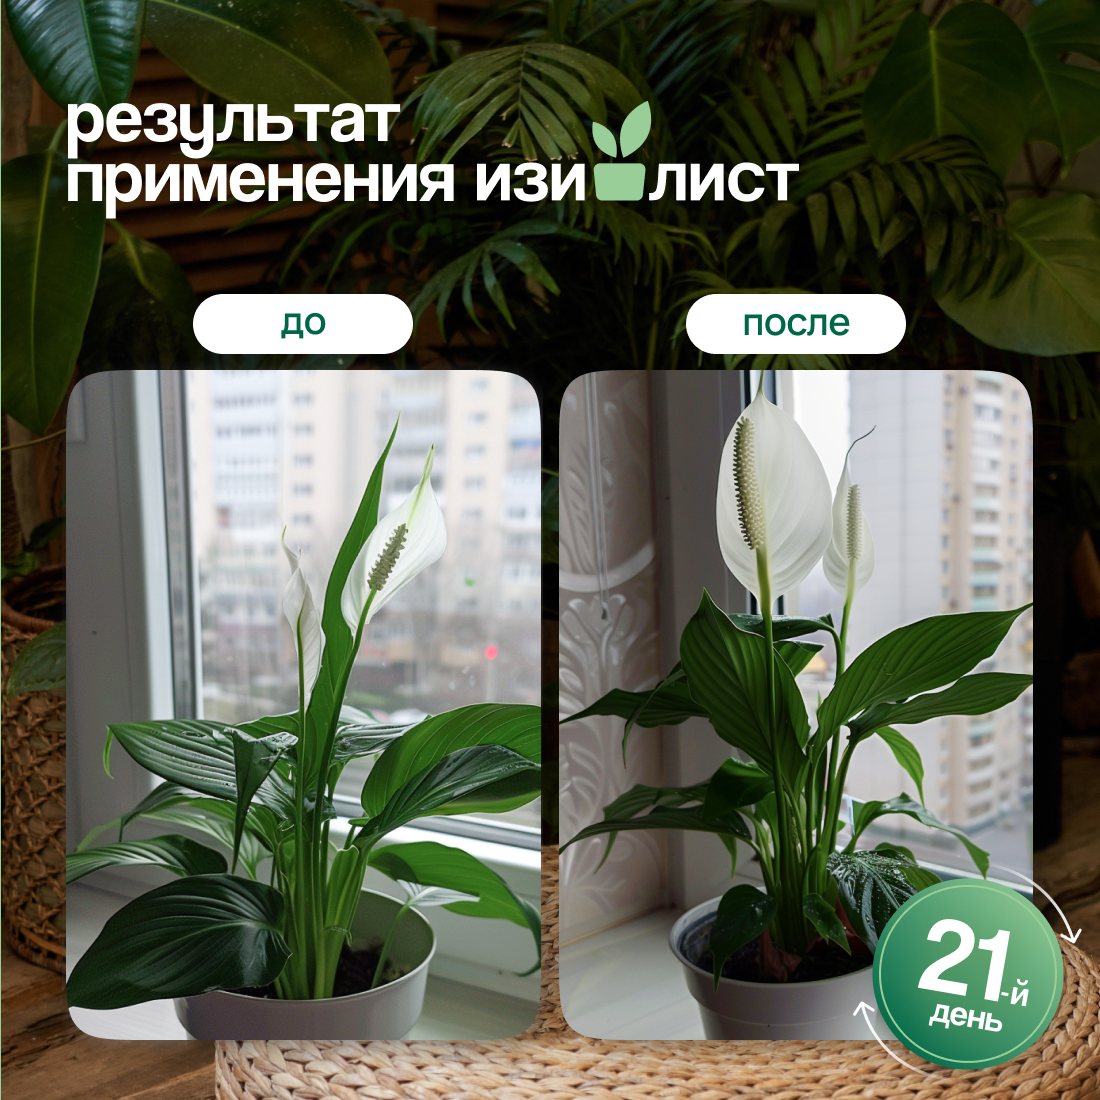 Набор Удобрения для комнатных растений изилист (спрей + подкормка)